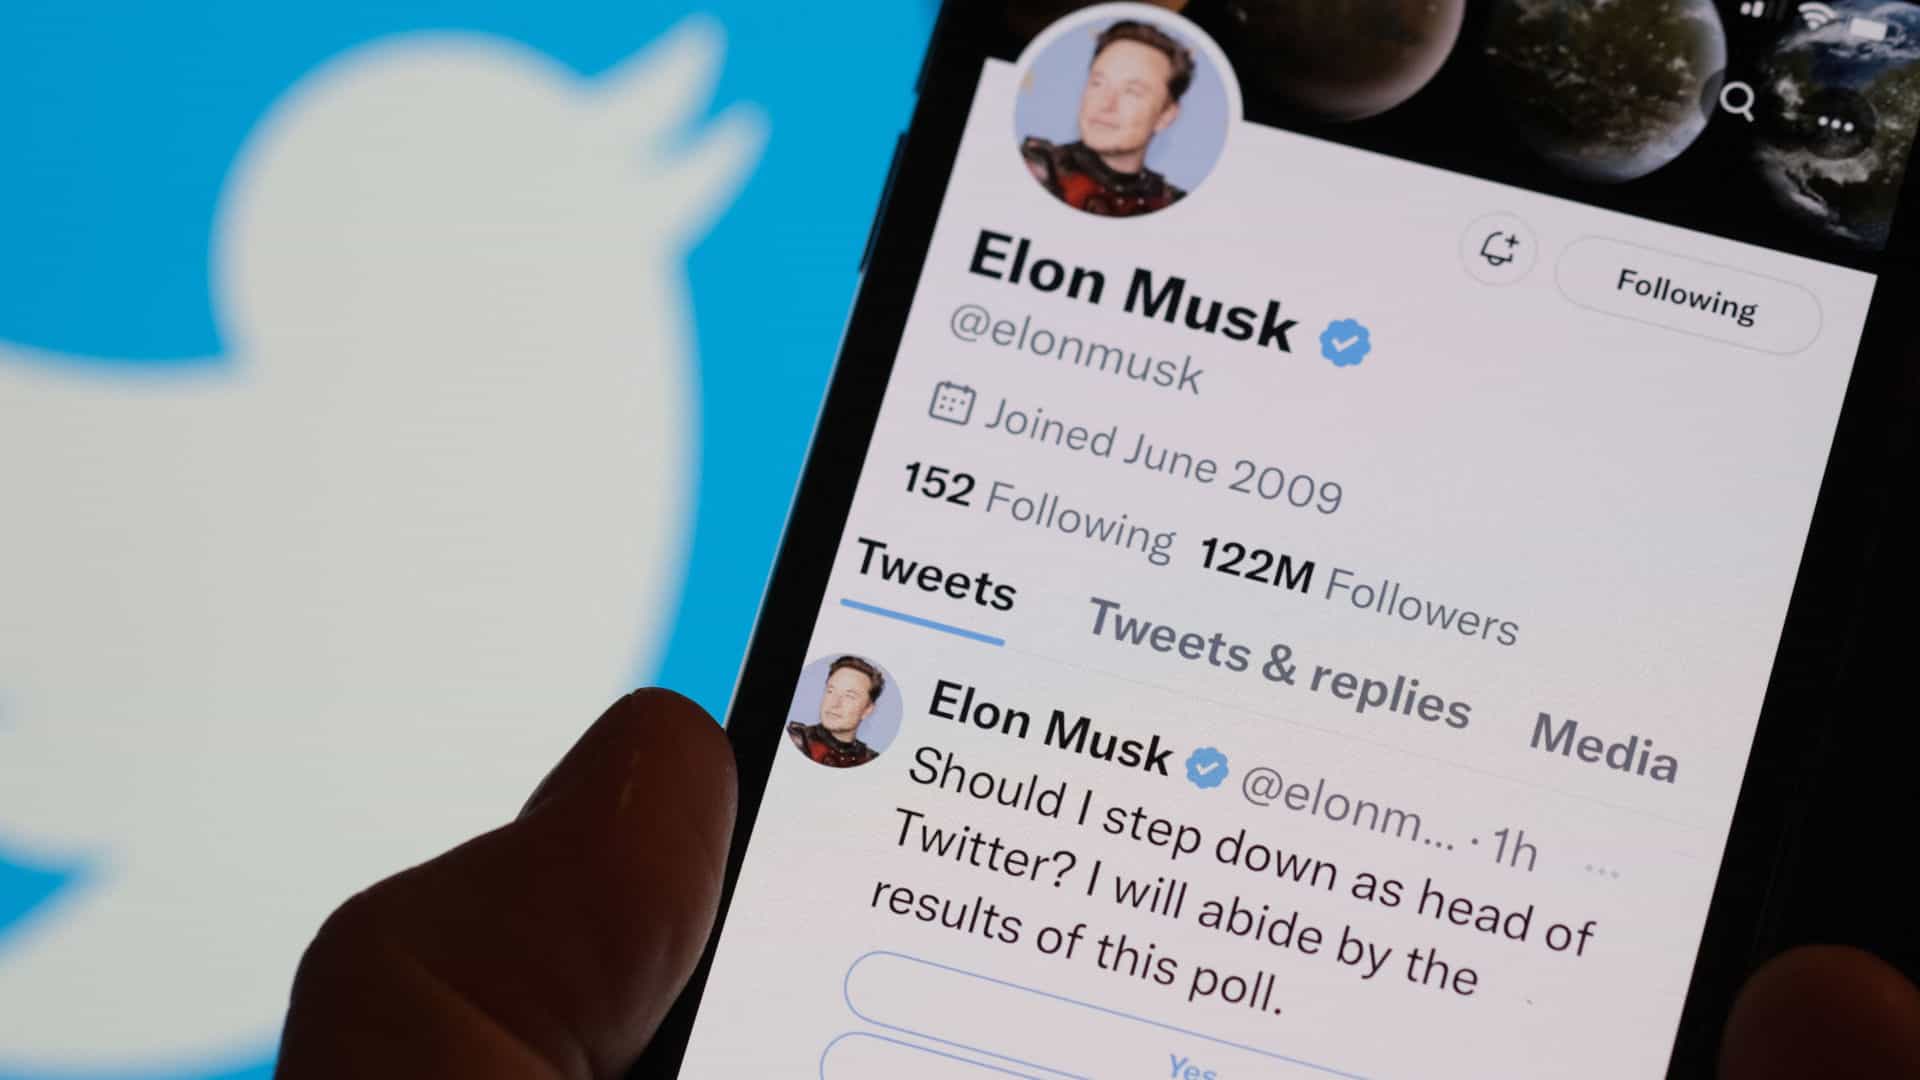 Elon Musk - Twitter